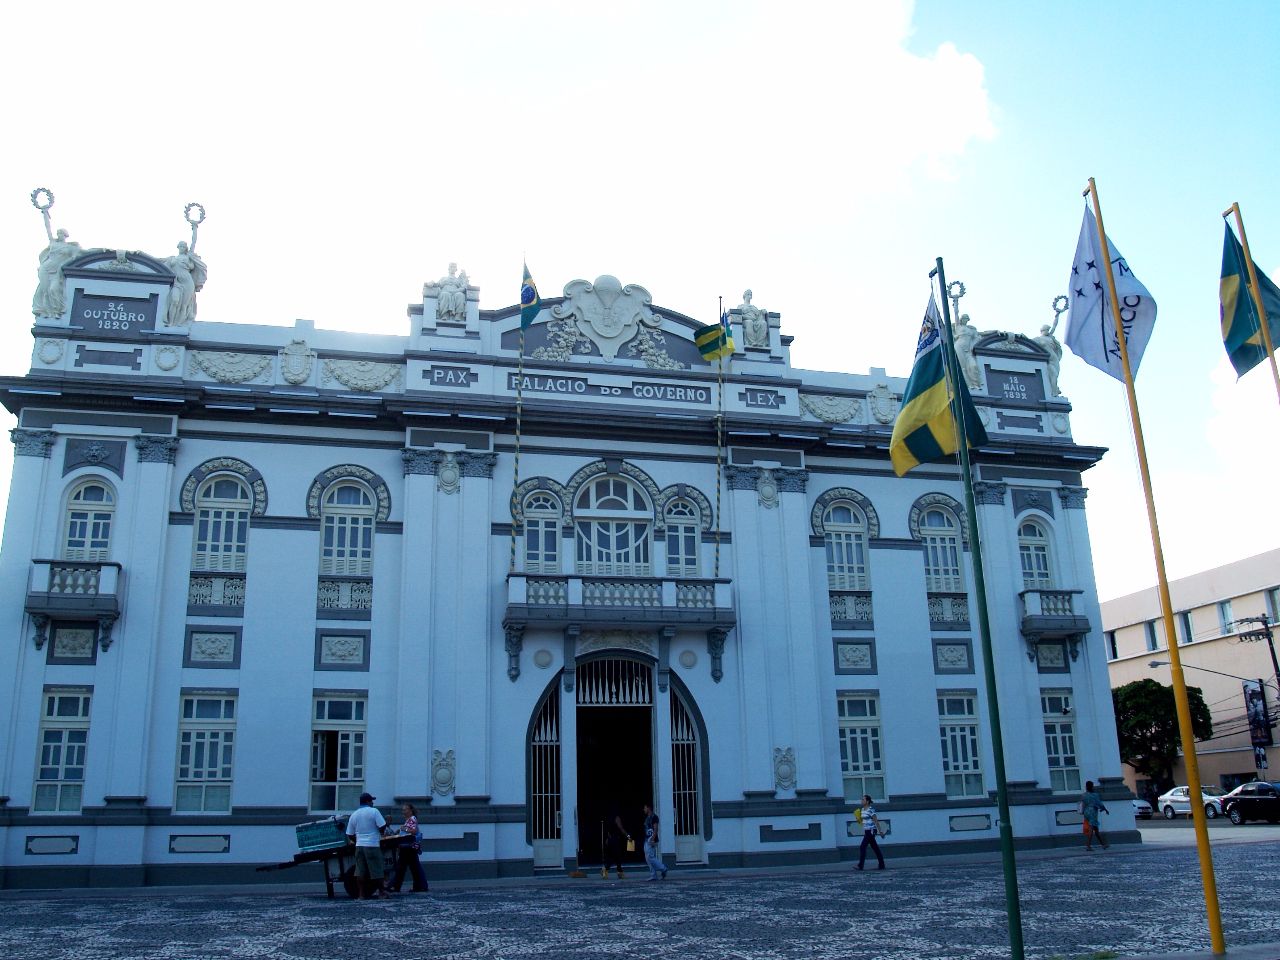 Дворец-музей Олимпиу Кампус Аракажу, Бразилия